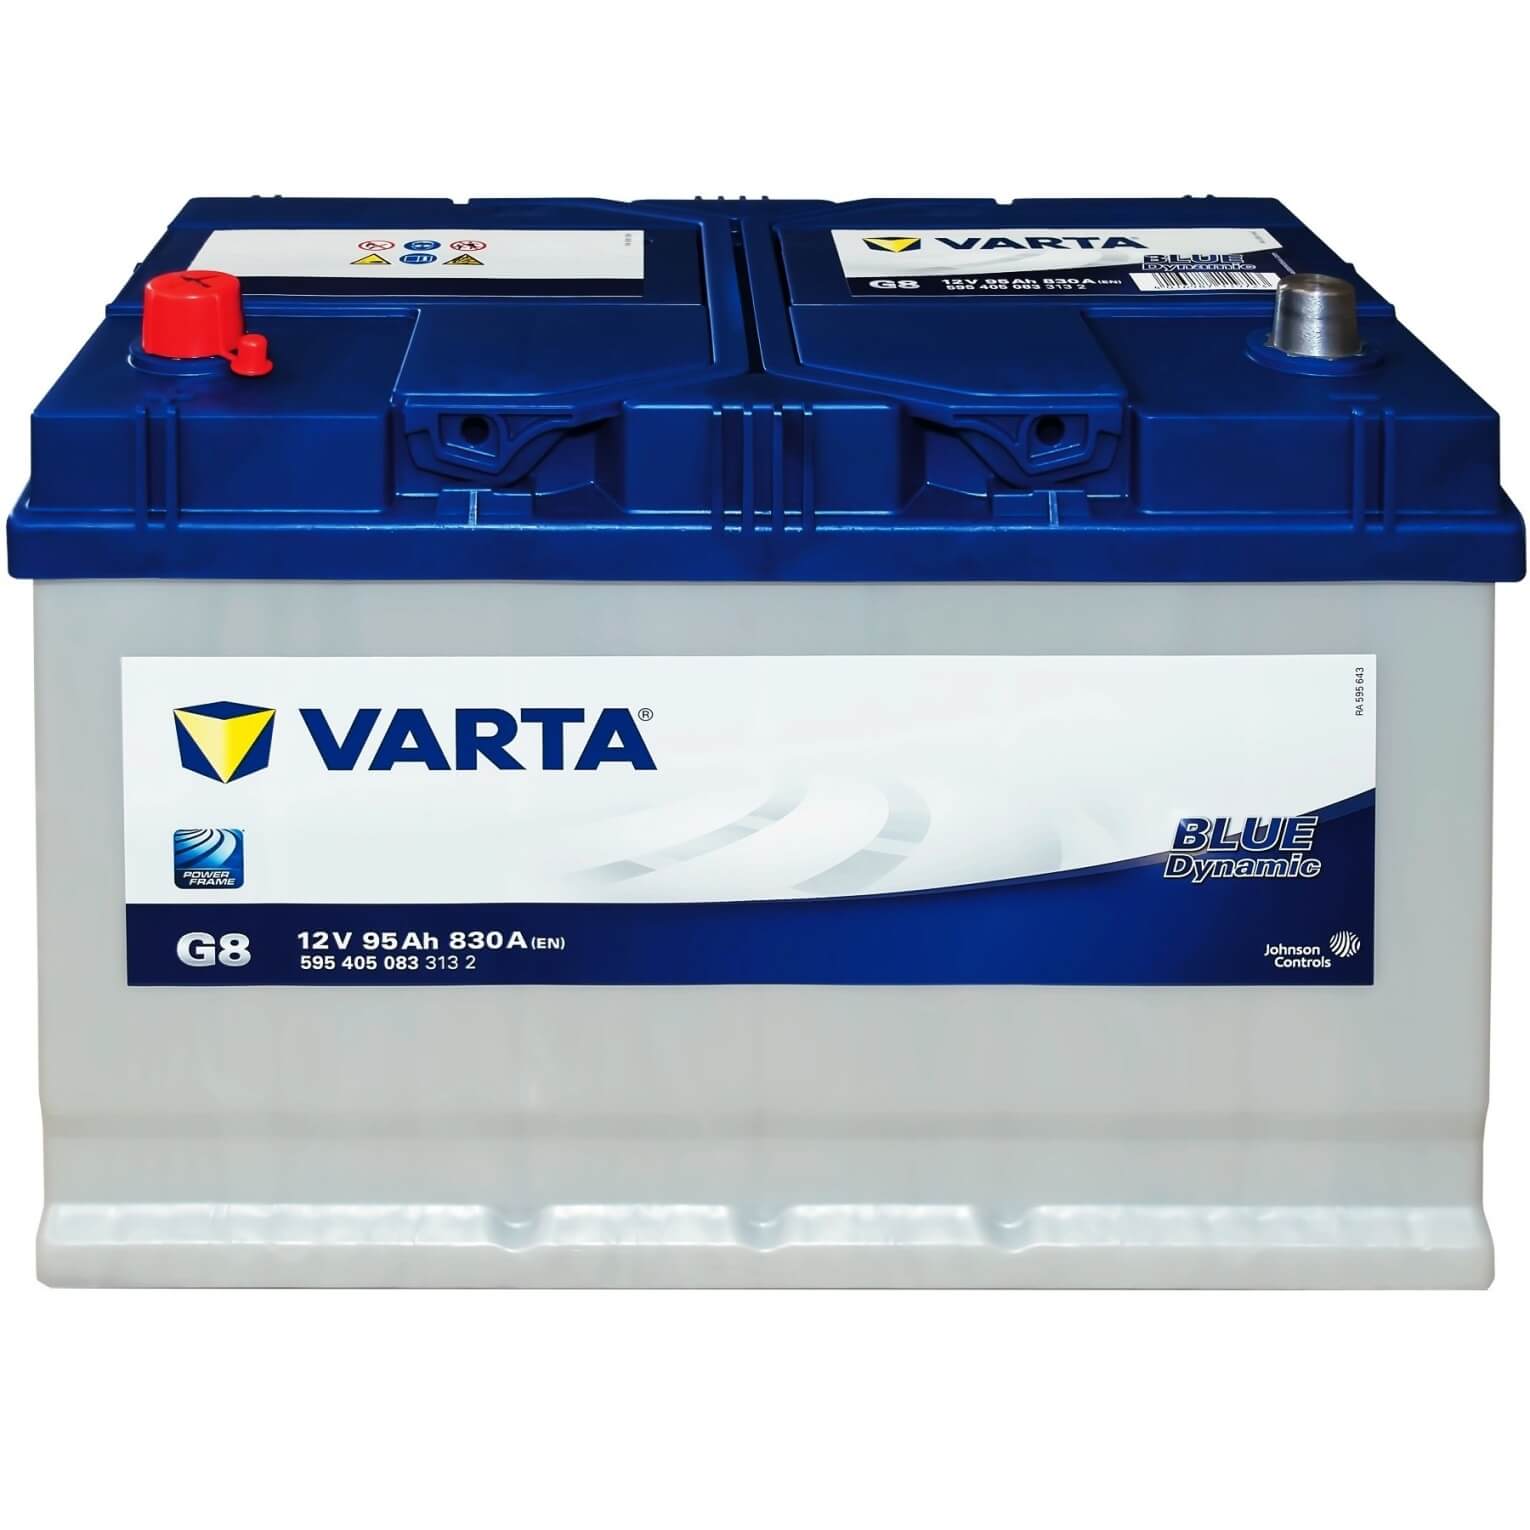 VARTA BLUE dynamic, G3 Batterie 5954020803132 12V 95Ah 800A B13 erhöhte  Rüttelfestigkeit G3, 595402080